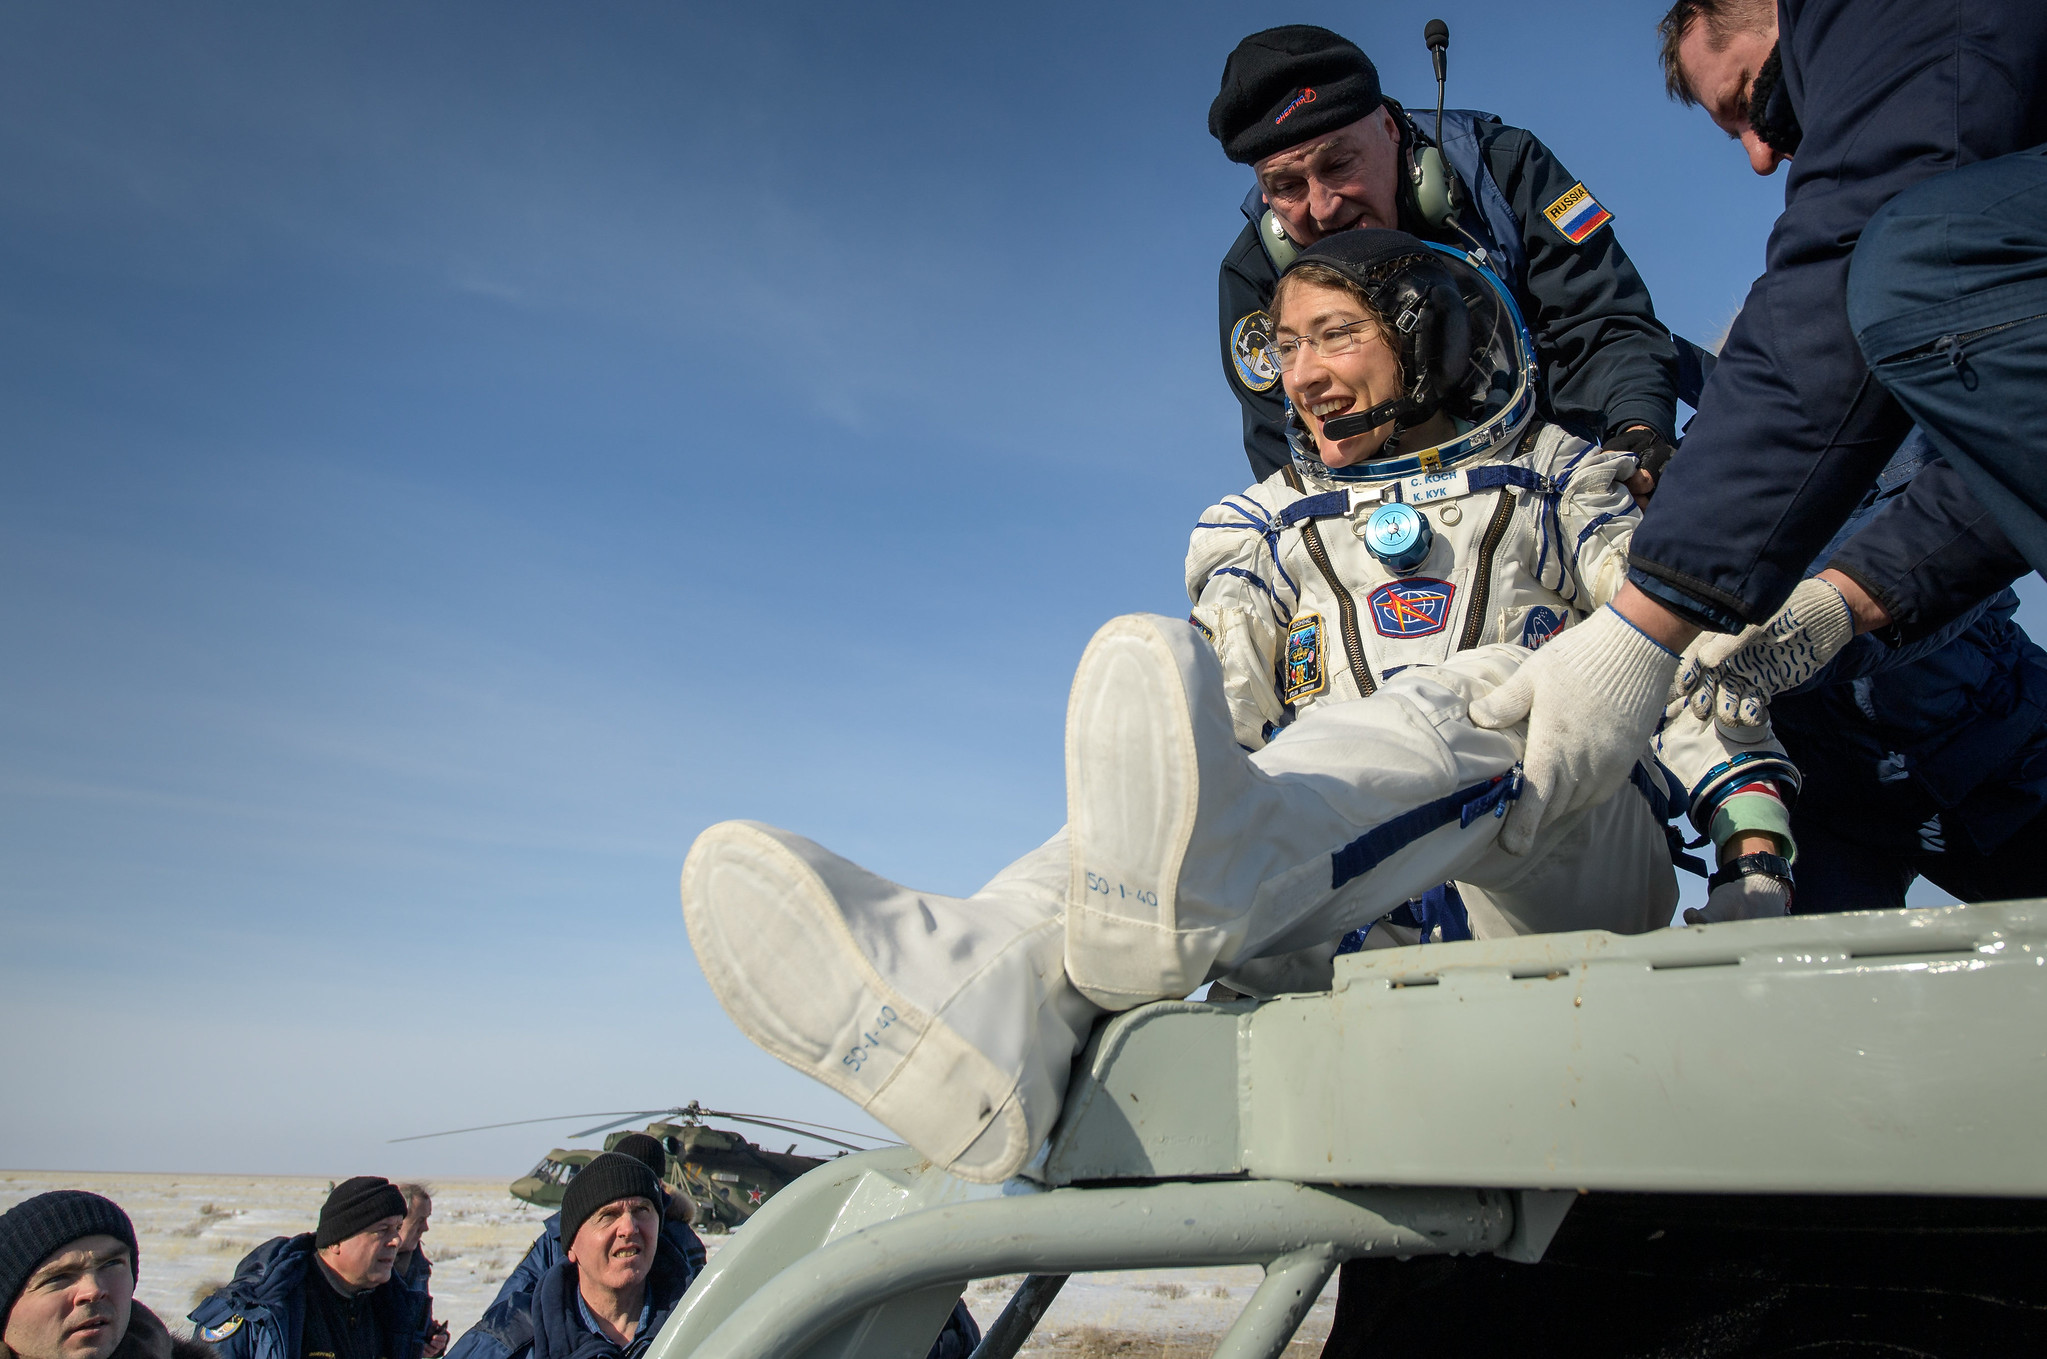 328 يوماً قضتها كريستينا كوك في الفضاء قبل عودتها إلى الأرض